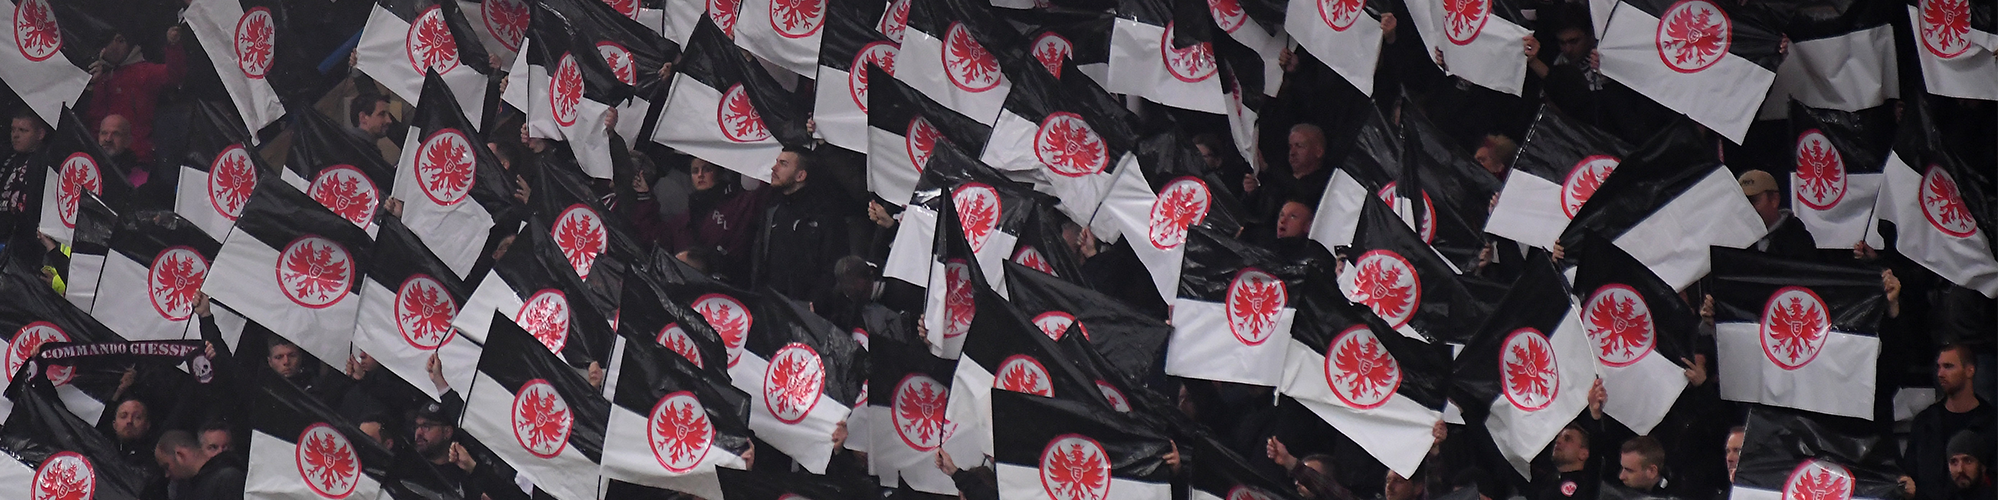 Eintracht Frankfurt Tickets & Experiences